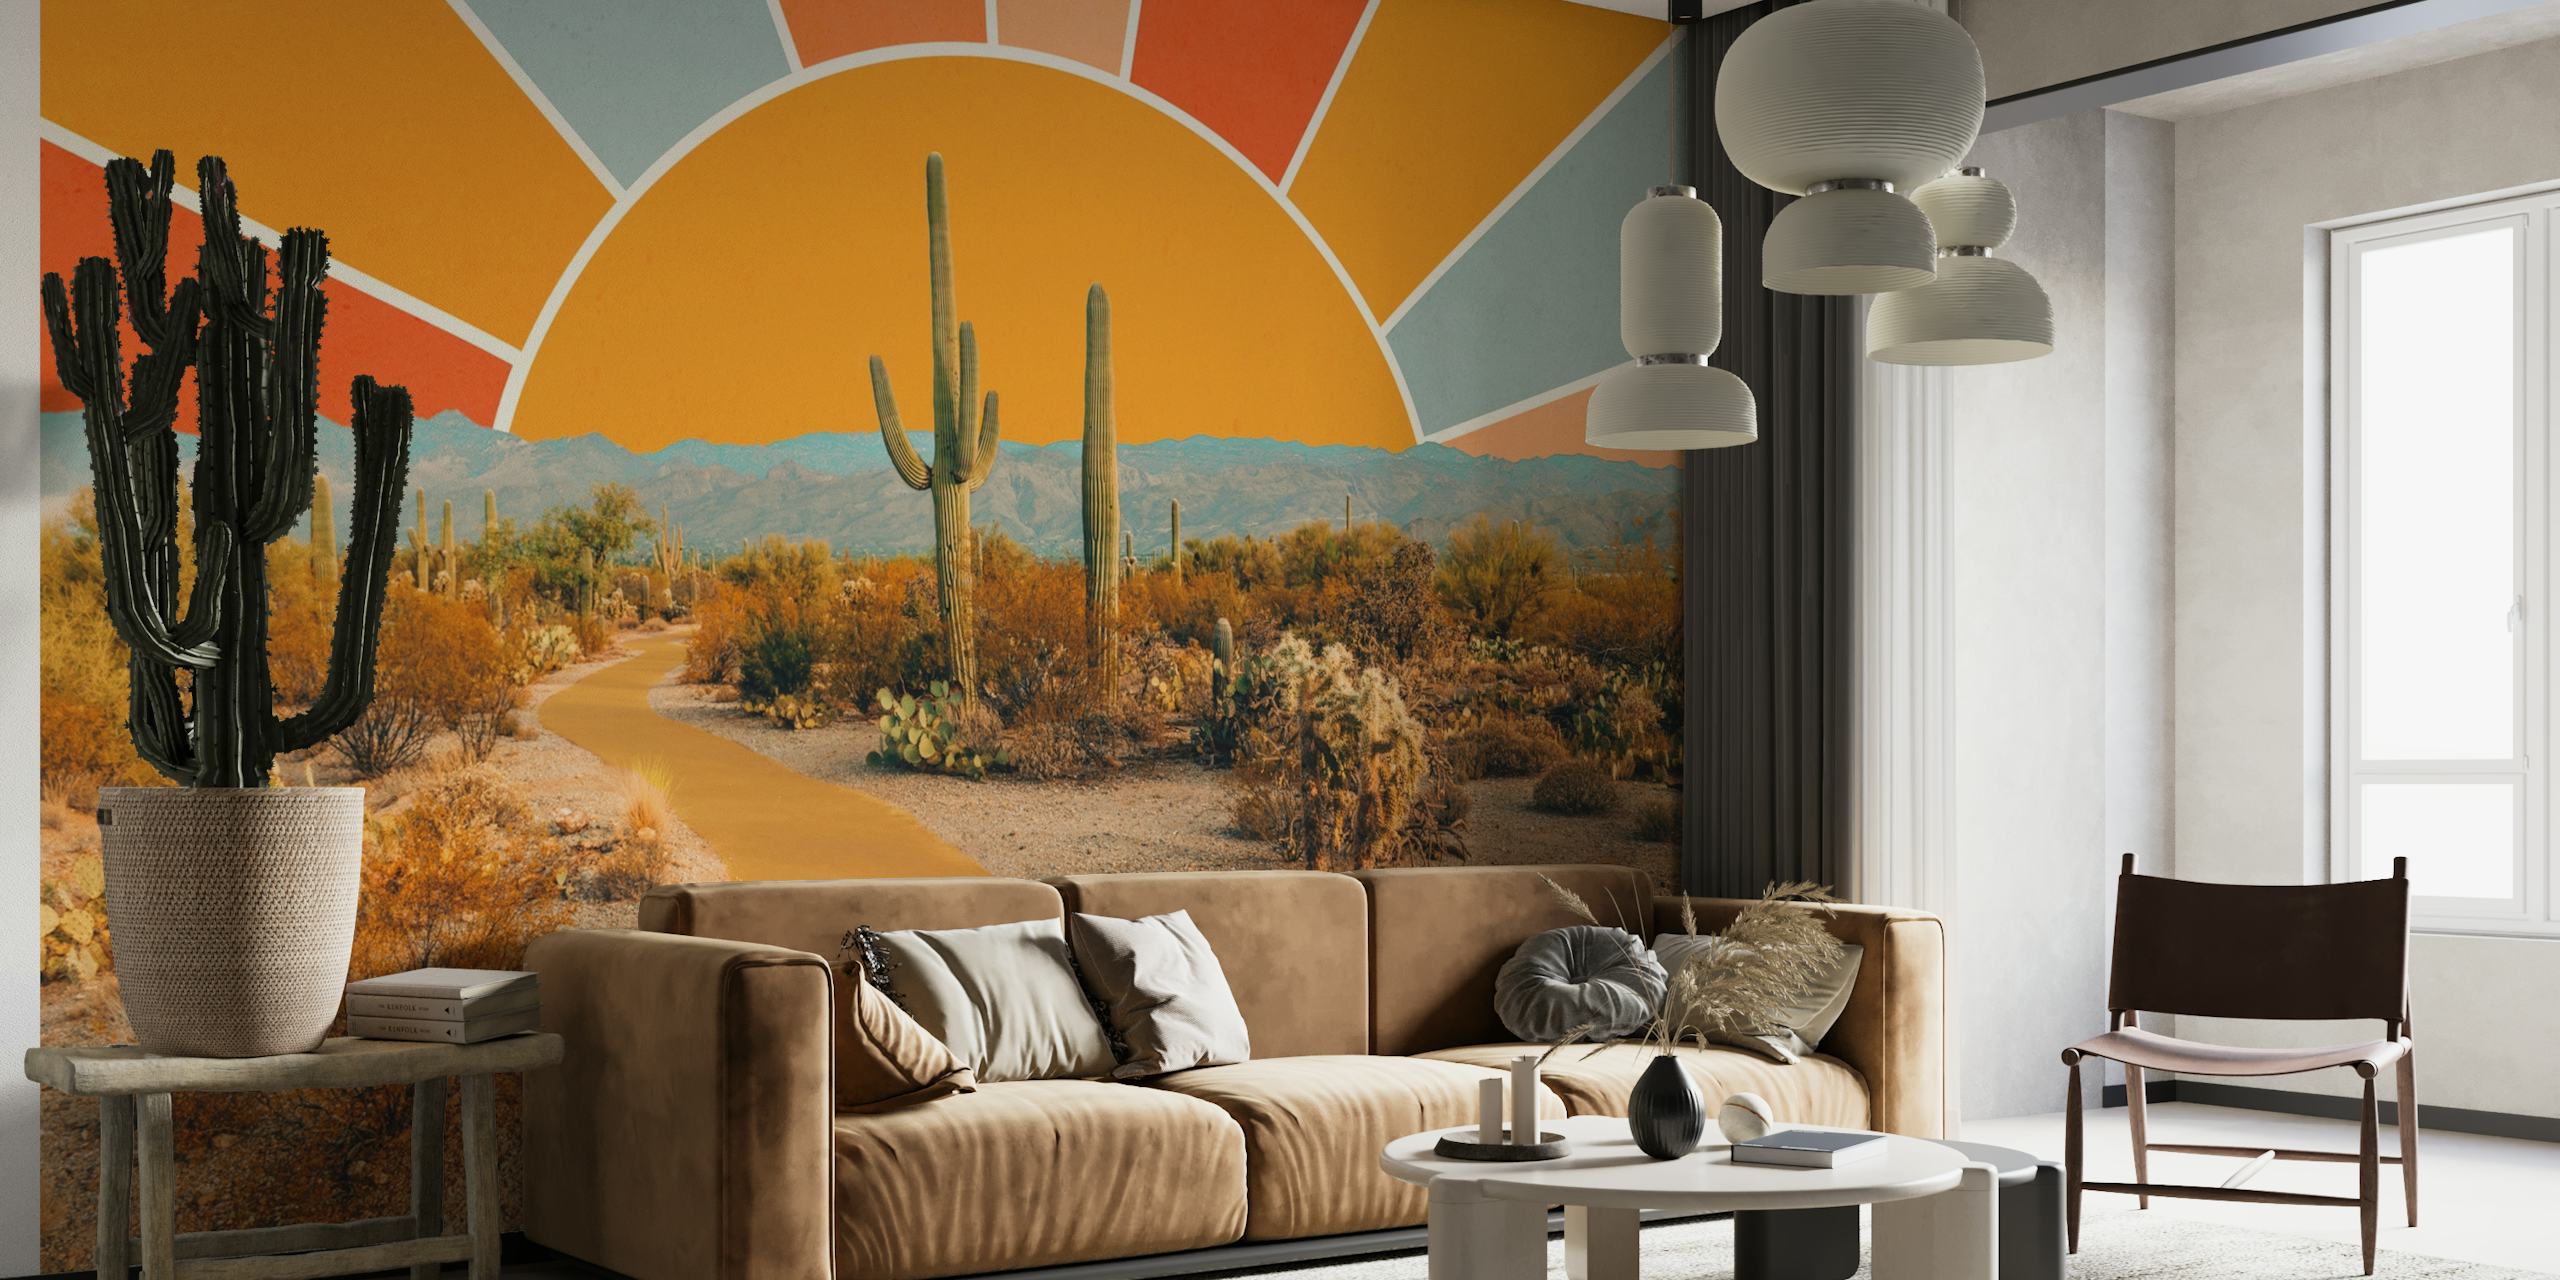 Mural artístico de escena desértica con cactus y un cálido diseño de rayos de sol